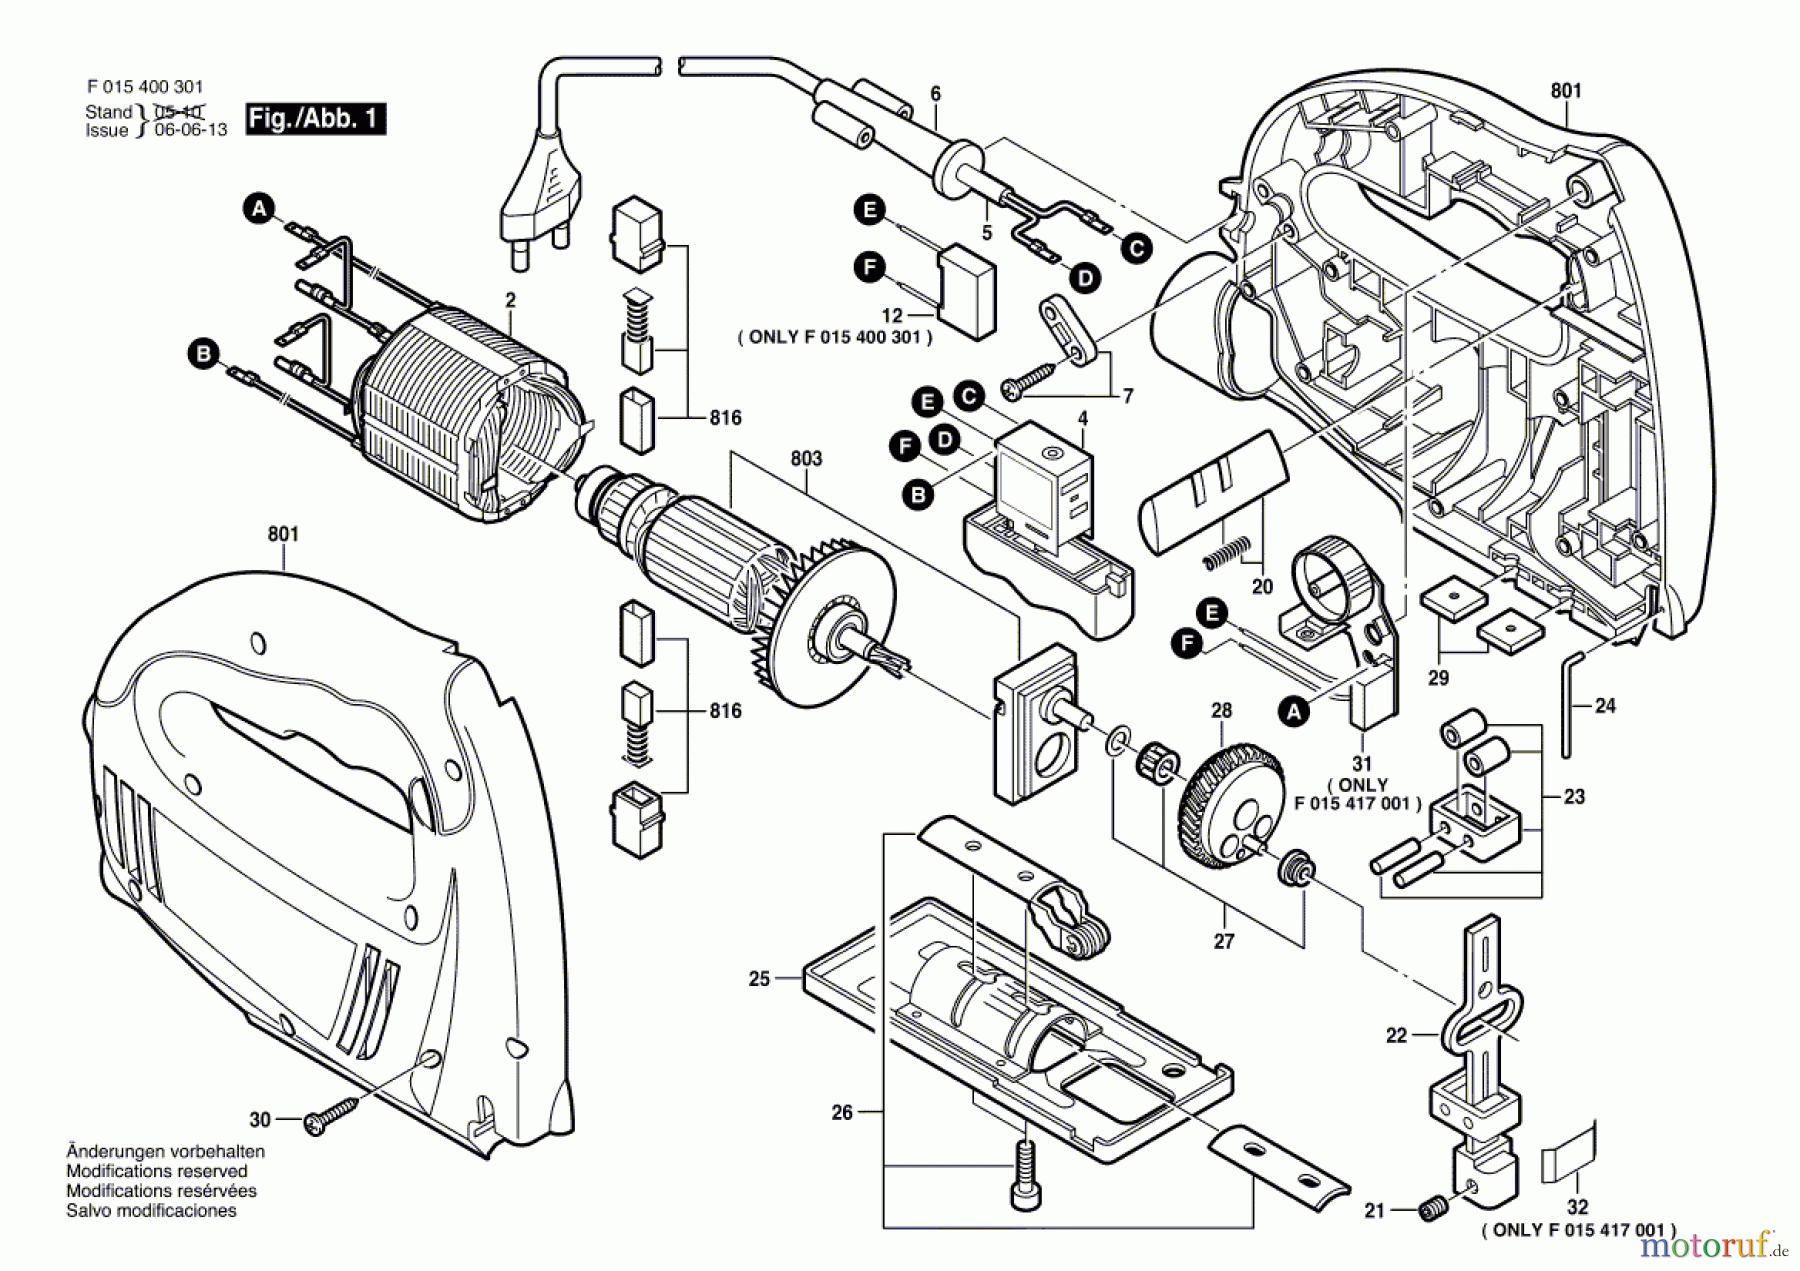  Bosch Werkzeug Stichsäge 4003 Seite 1